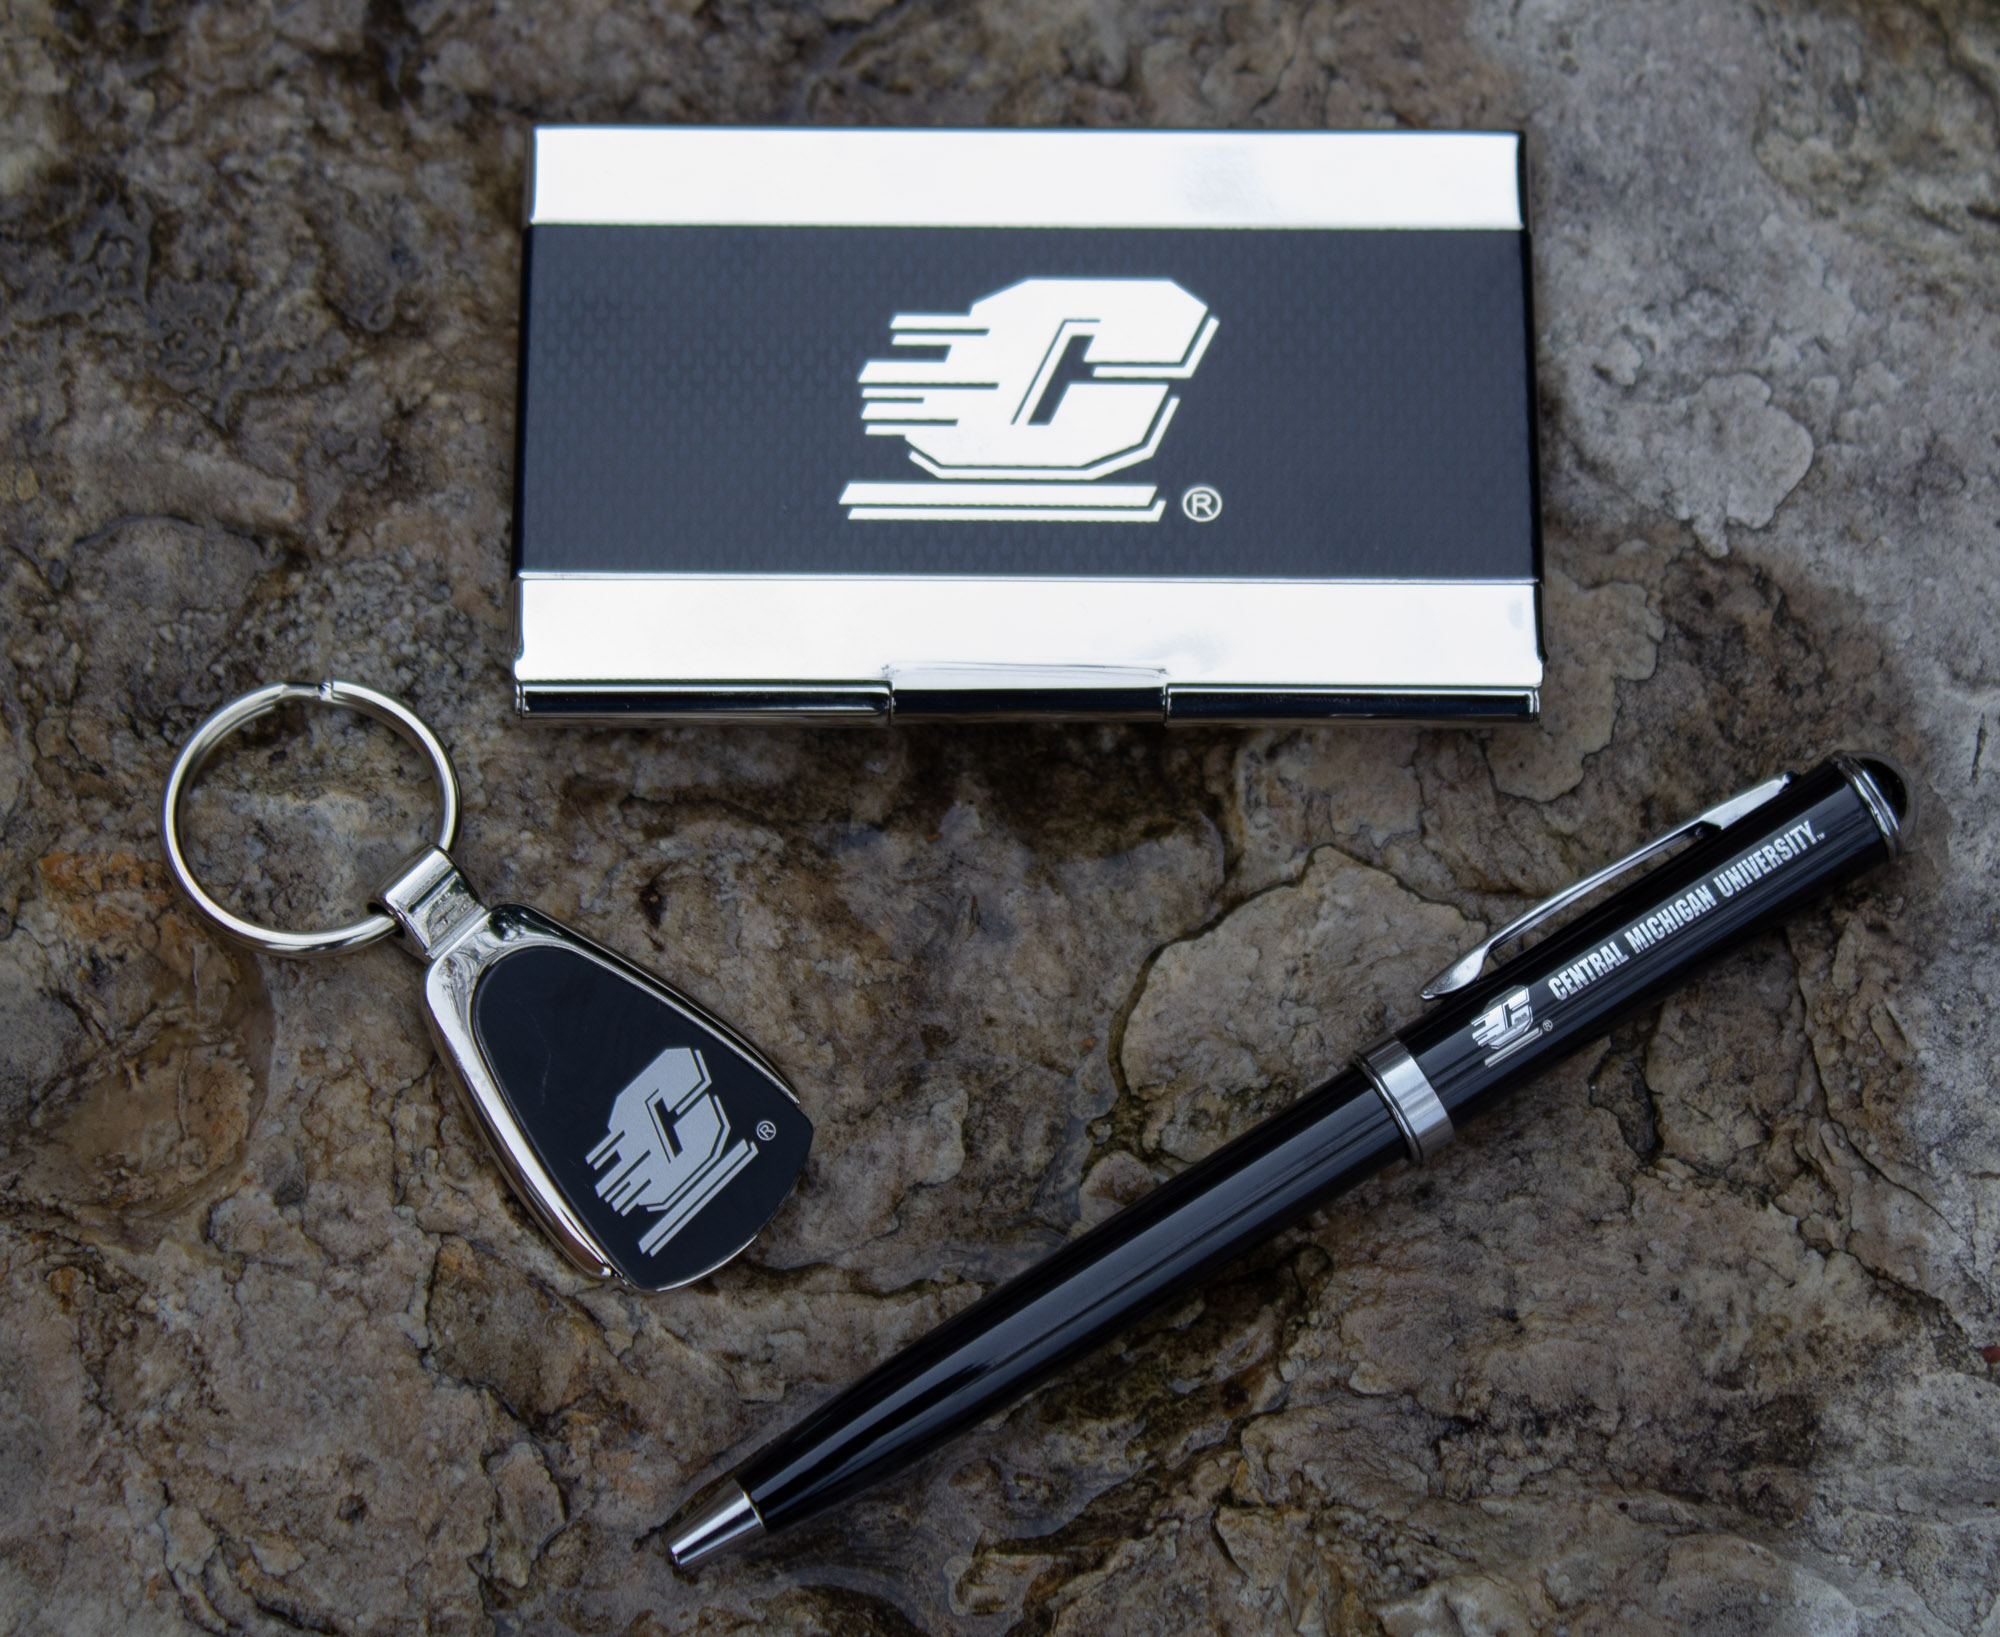 Action C Black & Chrome Keychain, Pen, Card Holder Gift Set